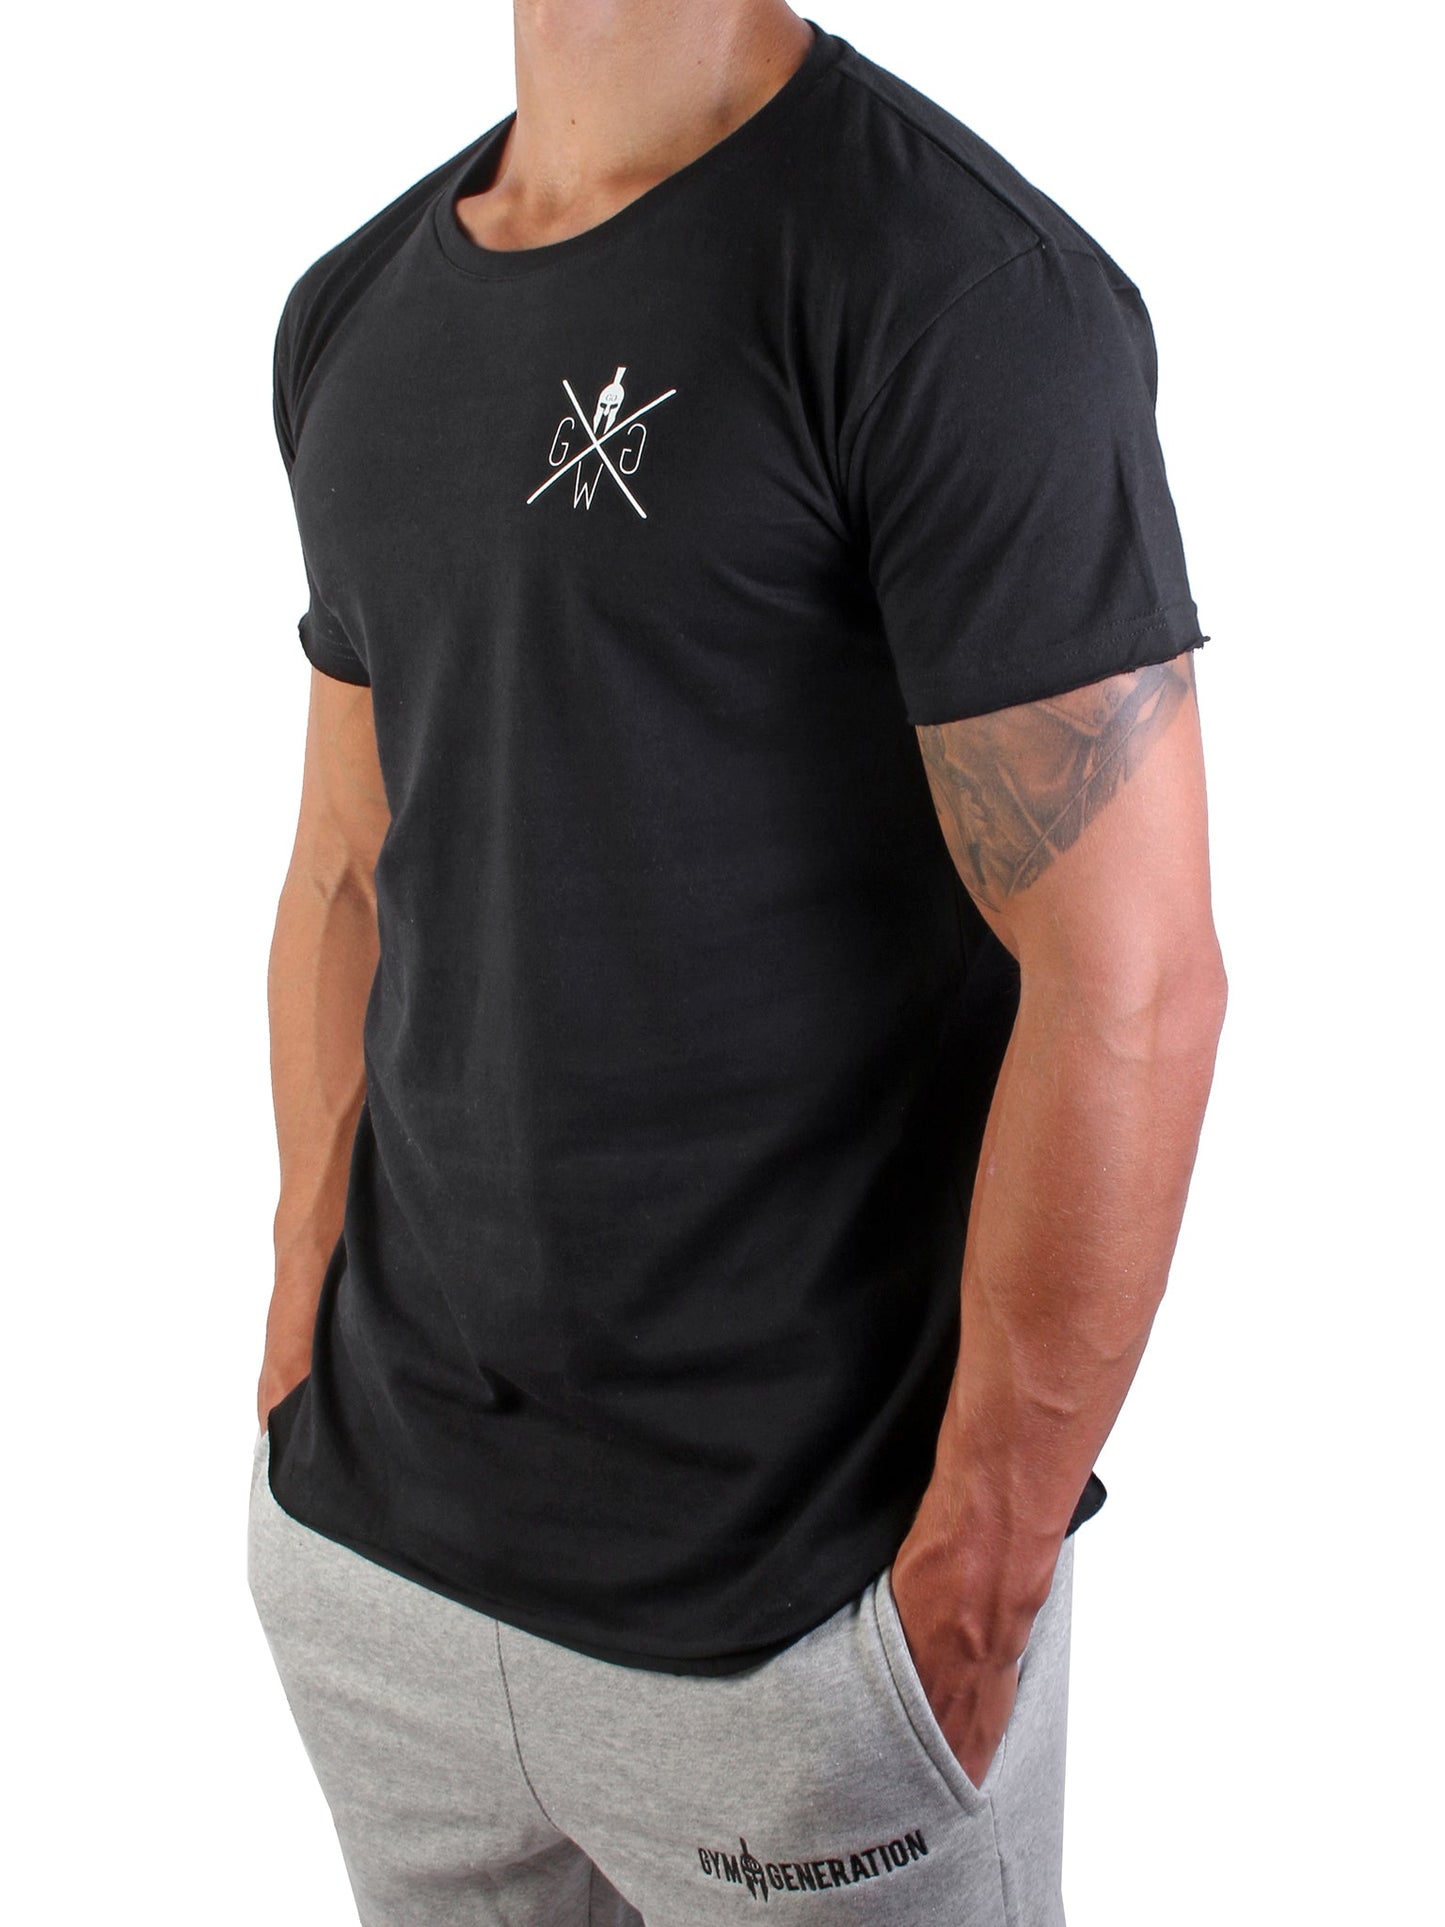 Schwarzes Gym T-Shirt von Gym Generation mit weißem Spartaner-Logo, ideal für stilbewusste Männer.